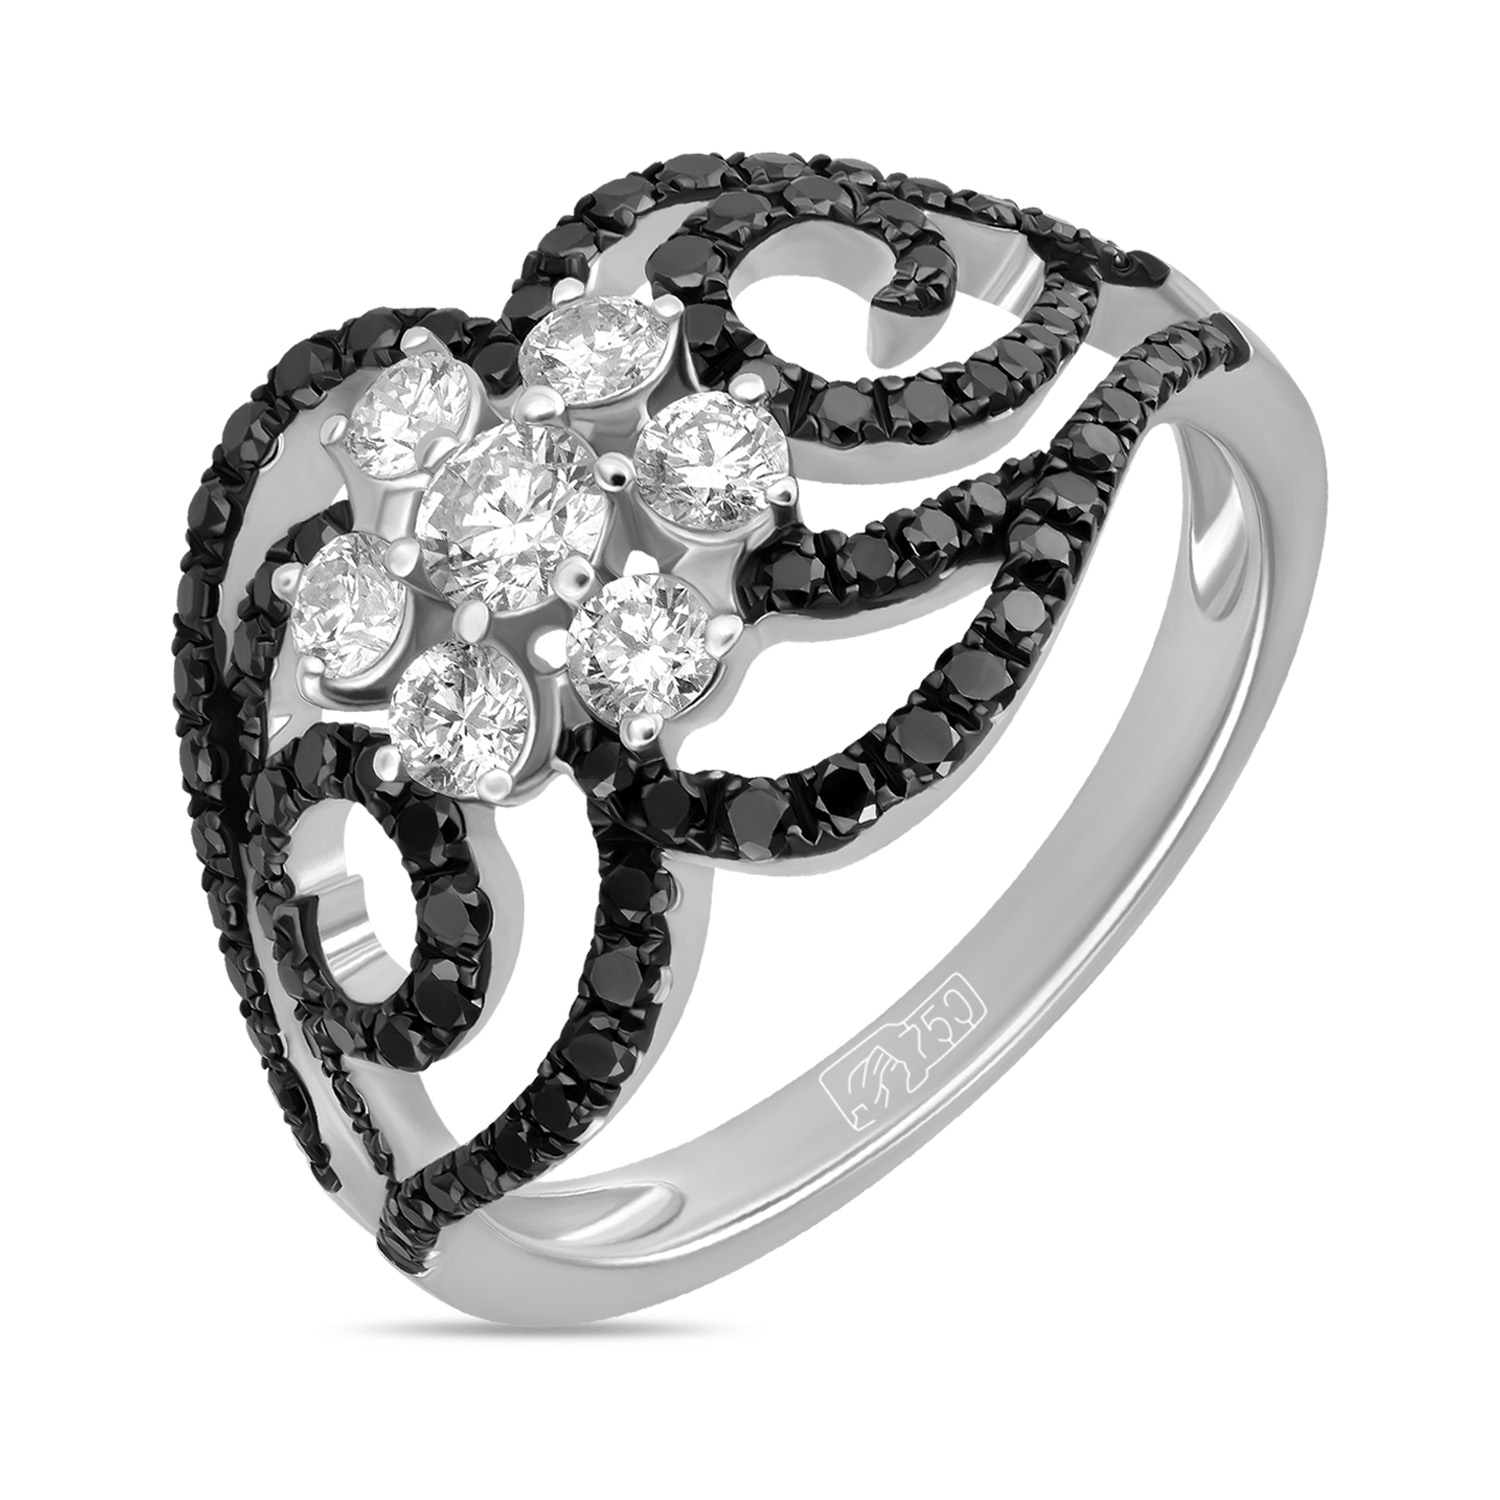 Кольца МЮЗ Золотое кольцо с облагороженными бриллиантами и бриллиантами кольца мюз золотое кольцо с облагороженными бриллиантами и цветными бриллиантами